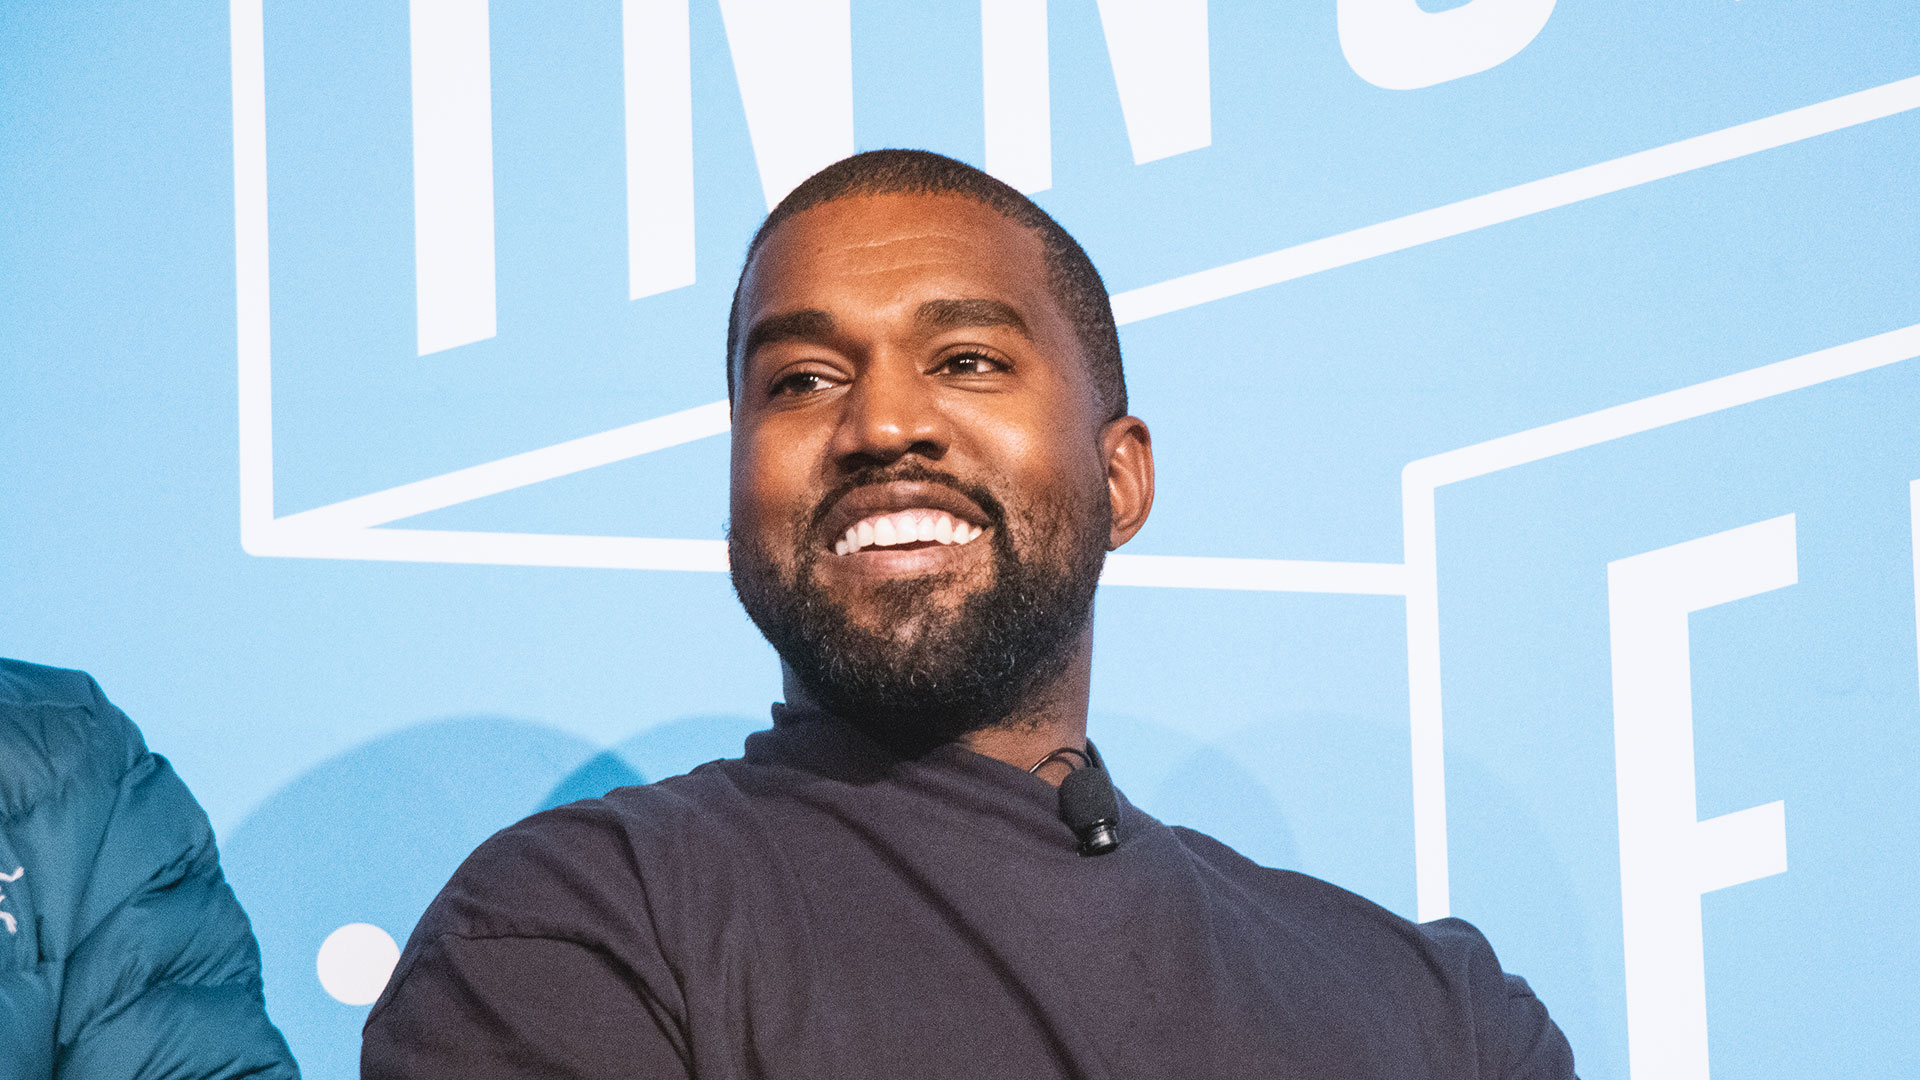 ¡Oficial! Kanye West registró su campaña a la presidencia de EEUU